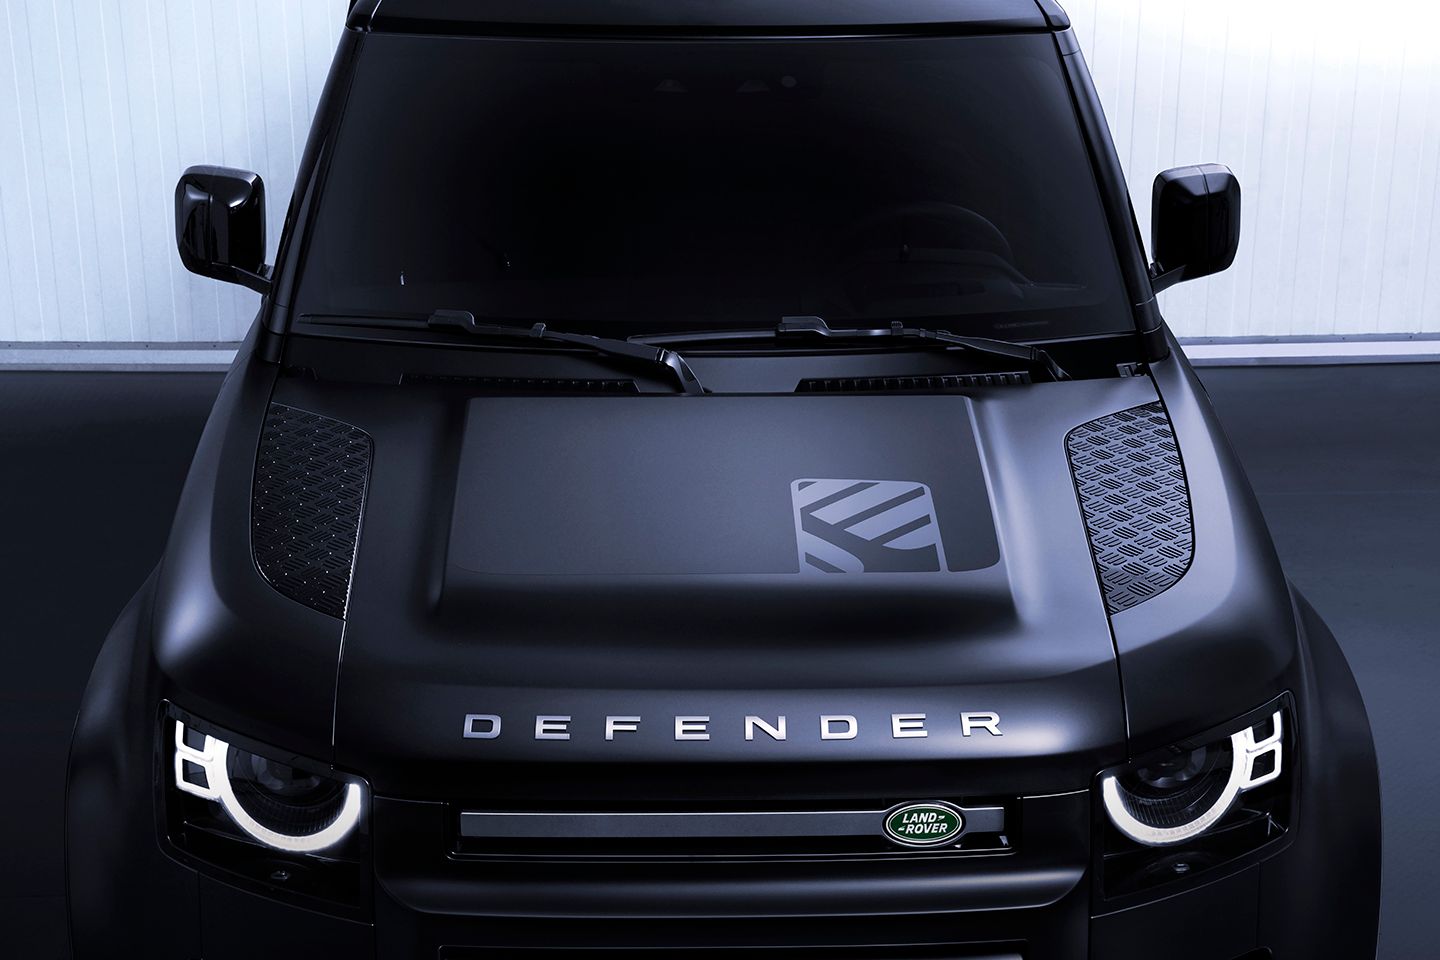 Land Rover announces 500hp Defender 130 V8 - PistonHeads UK